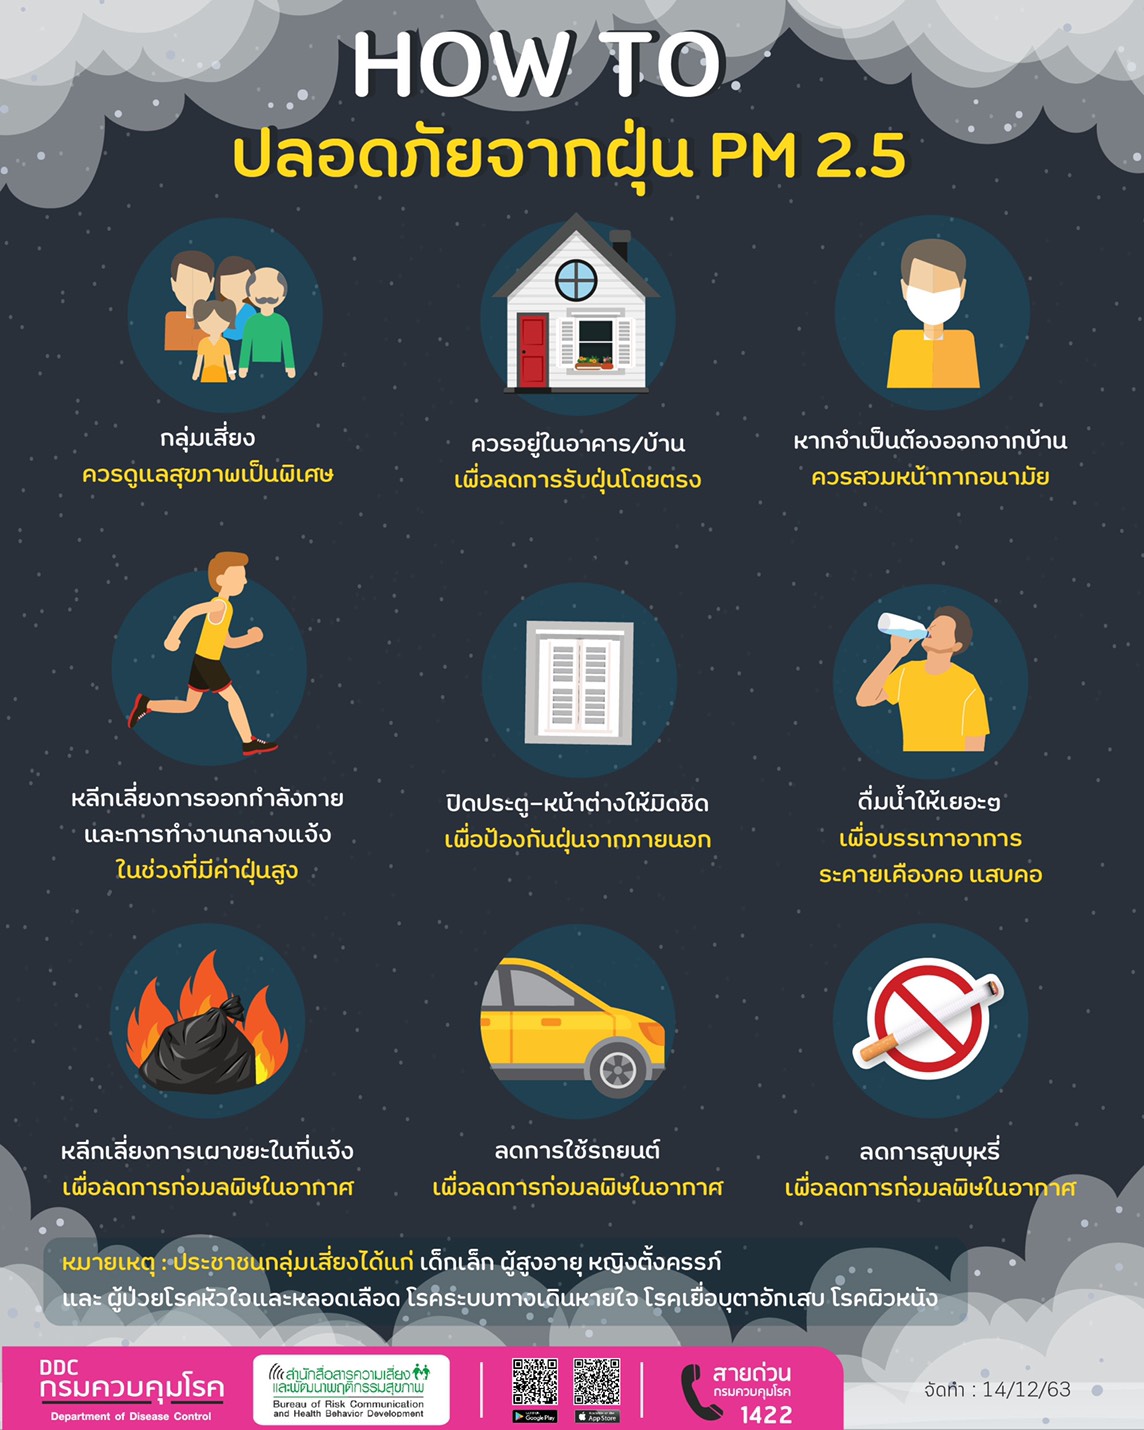 HOW TO ปลอดภัยจากฝุ่น PM 2.5